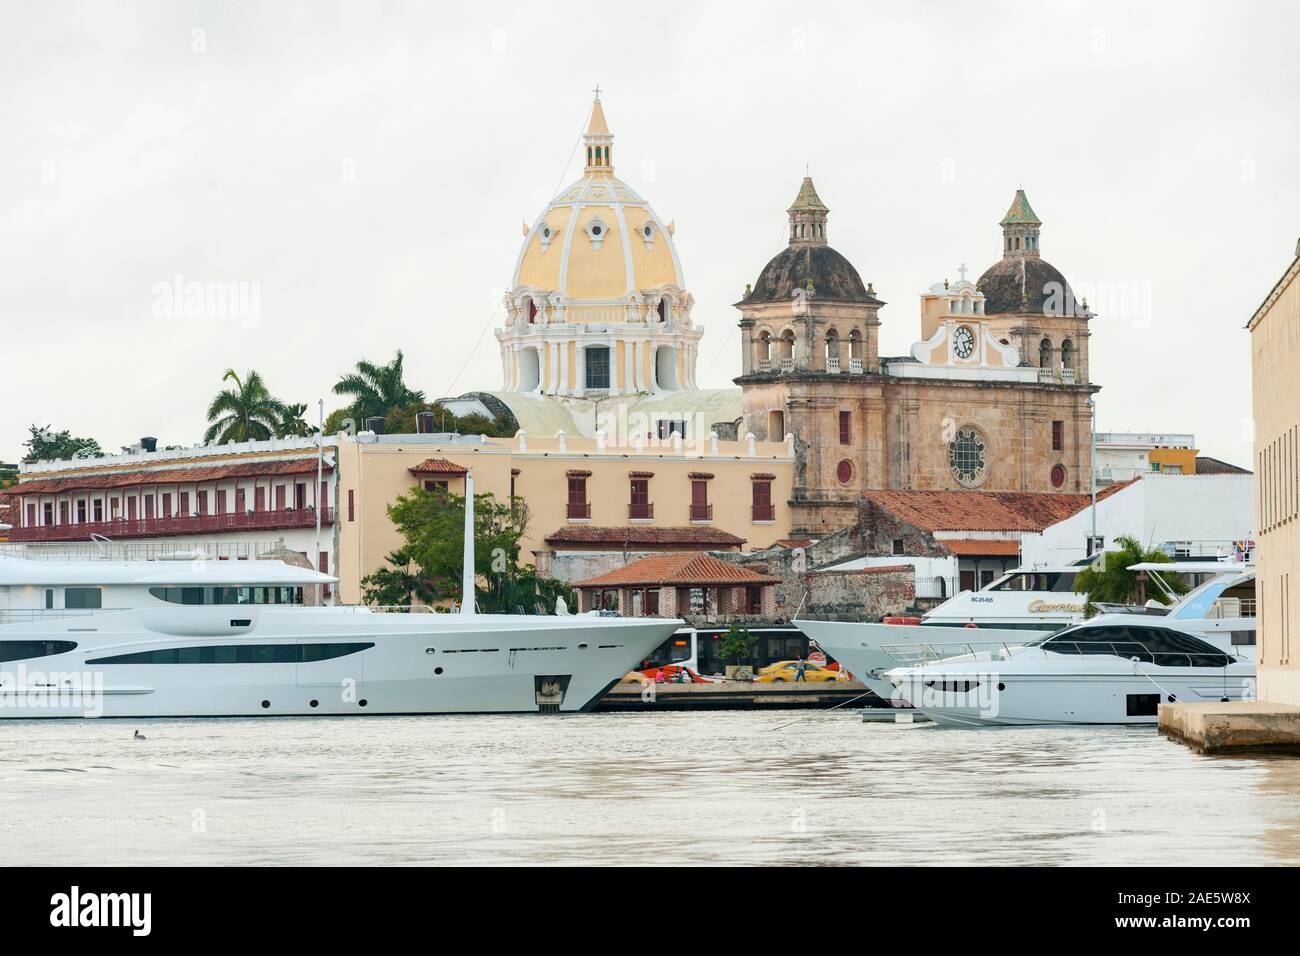 Vista delle barche ormeggiate al fianco di edifici storici della città vecchia cinta di mura di Cartagena in Colombia. Foto Stock